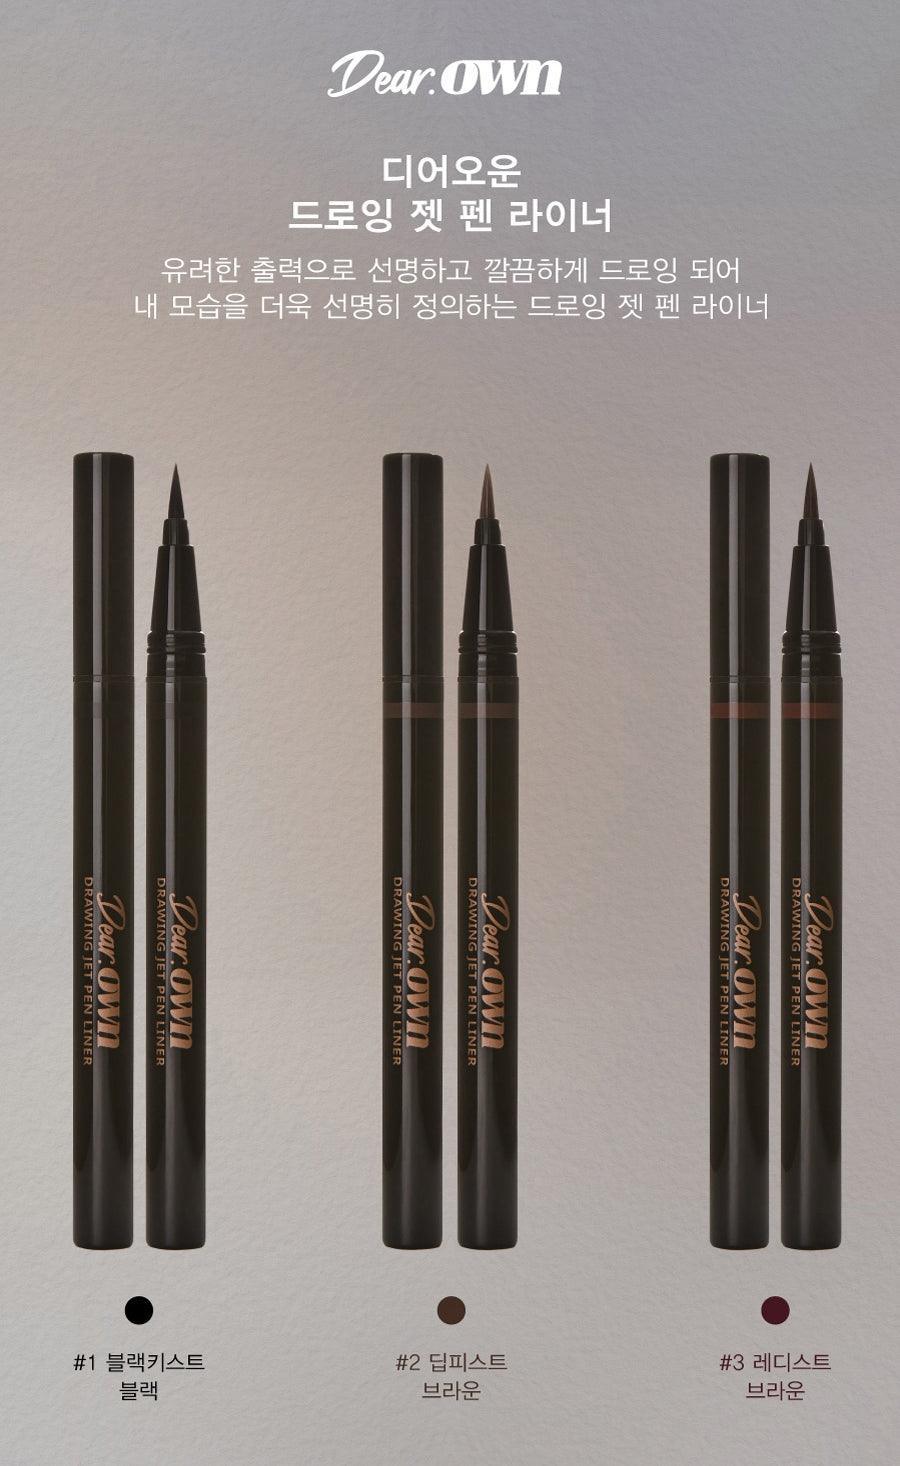 Kẻ Mắt Dear Own Drawing Jet Pen Liner - Kallos Vietnam